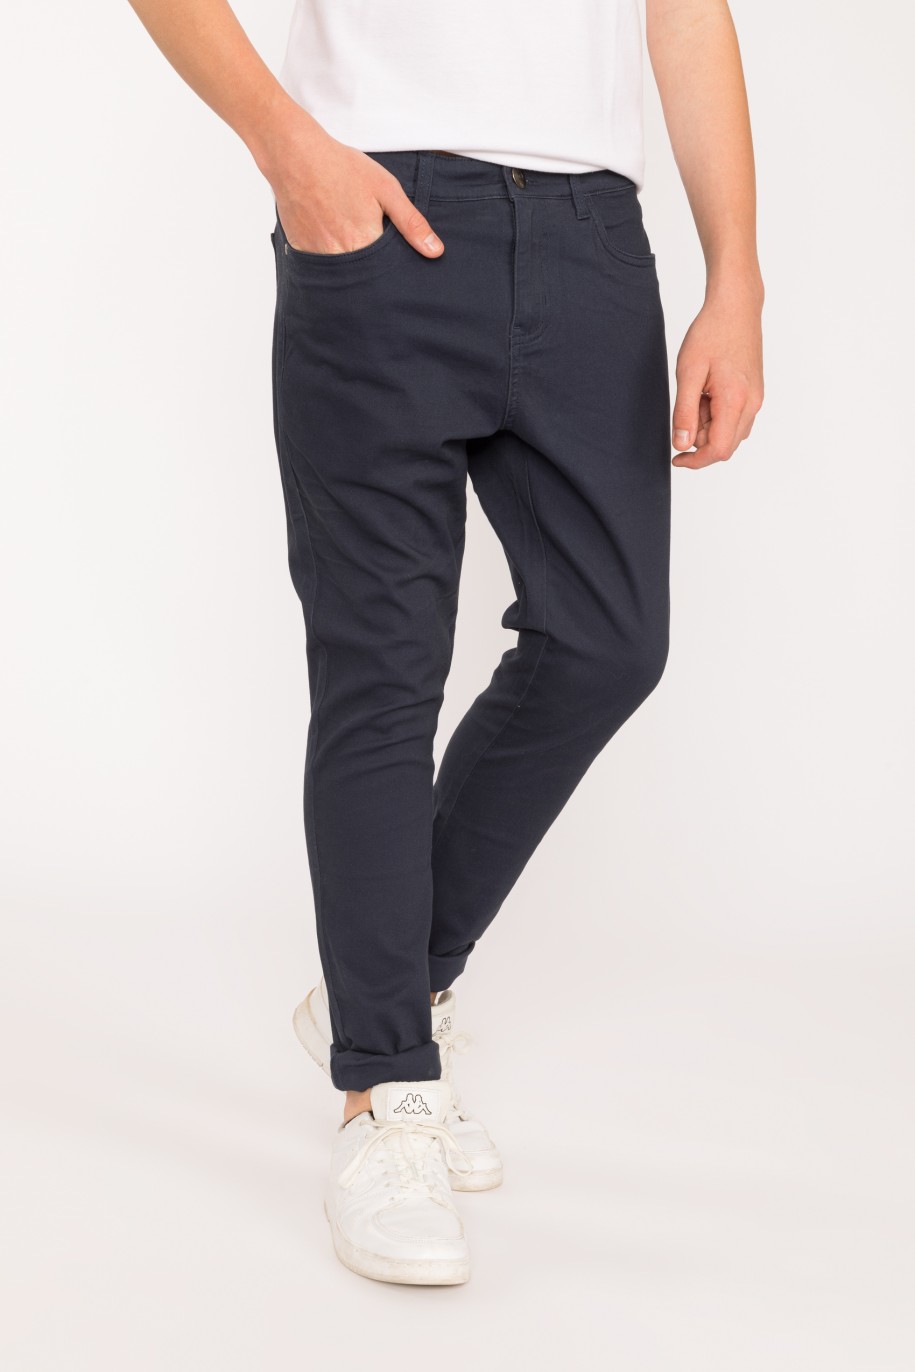 Granatowe materiałowe spodnie dla chłopaka LOOSE - 28422